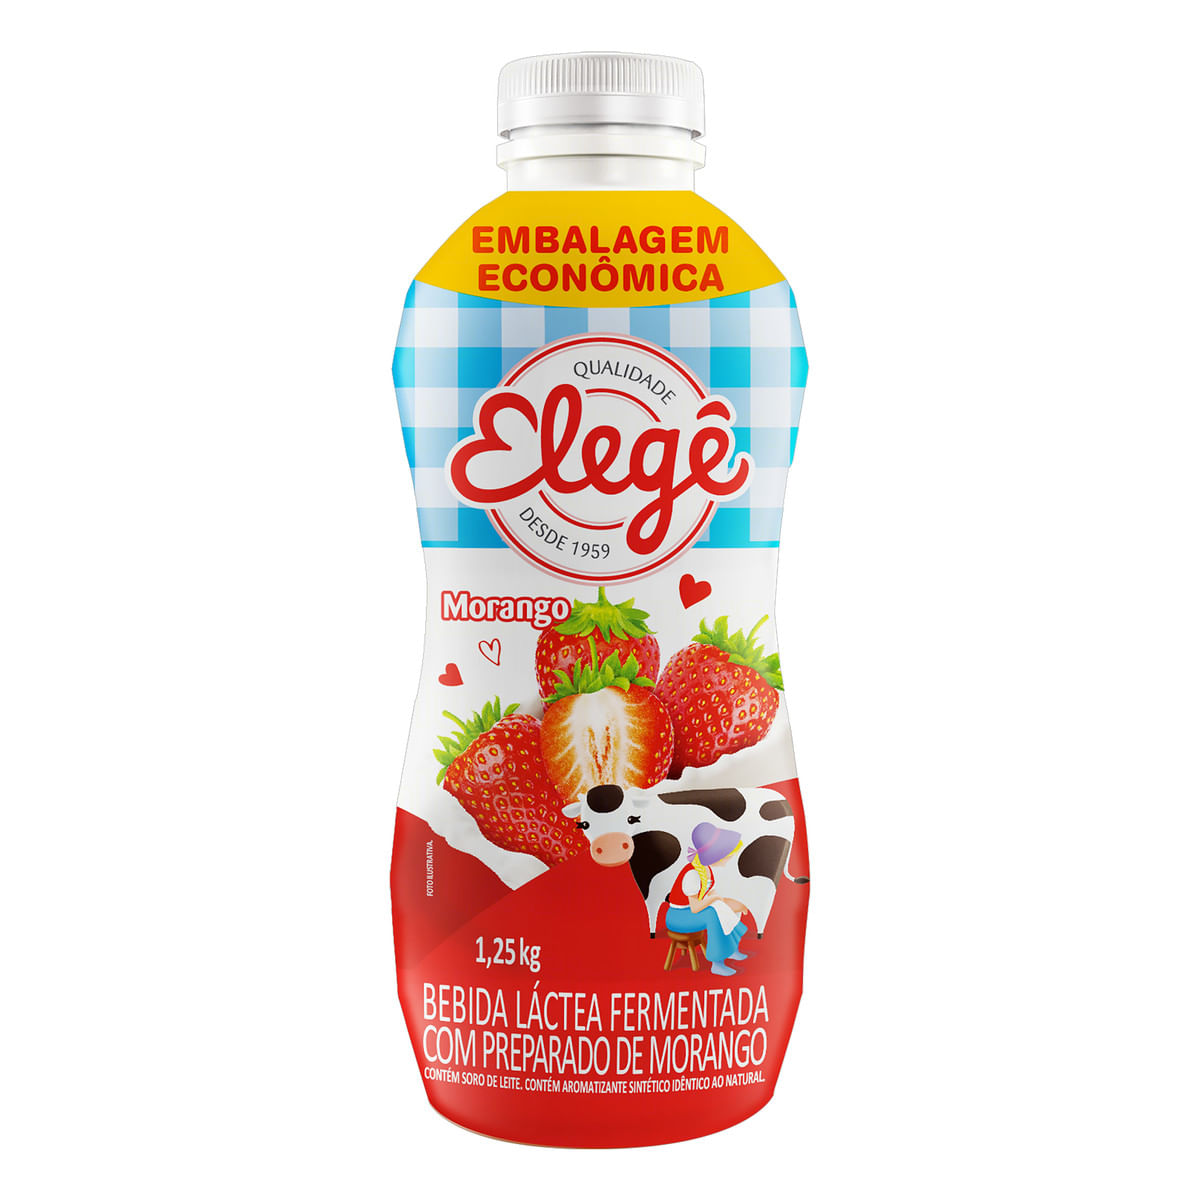 bebida-lactea-fermentada-morango-elege-garrafa-1,25-kg-embalagem-economica-1.jpg